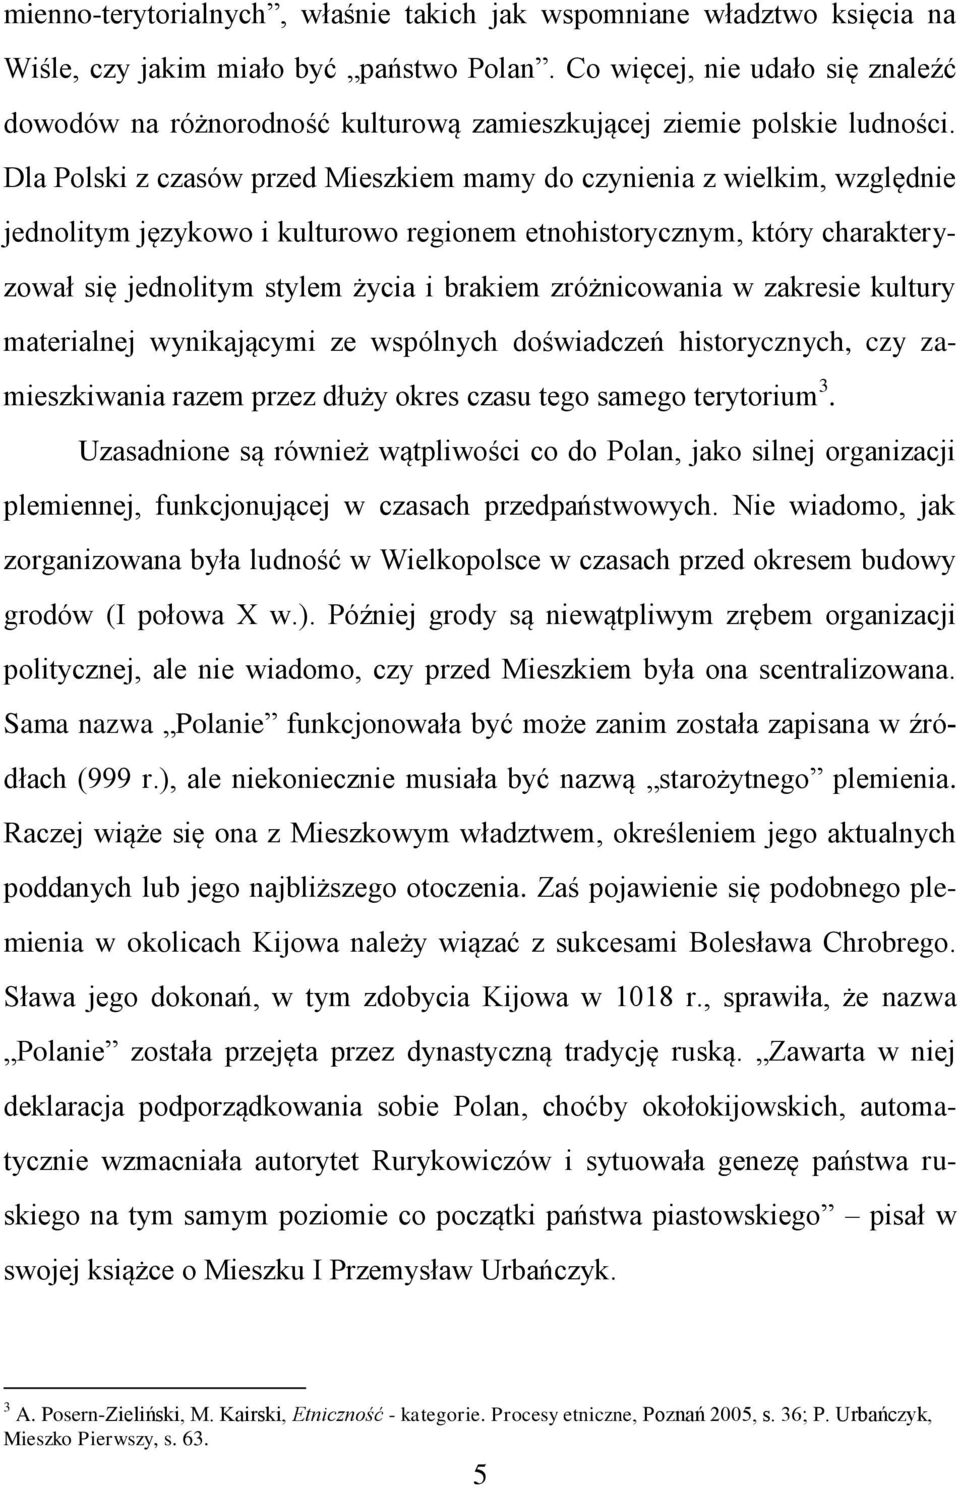 Dla Polski z czasów przed Mieszkiem mamy do czynienia z wielkim, względnie jednolitym językowo i kulturowo regionem etnohistorycznym, który charakteryzował się jednolitym stylem życia i brakiem